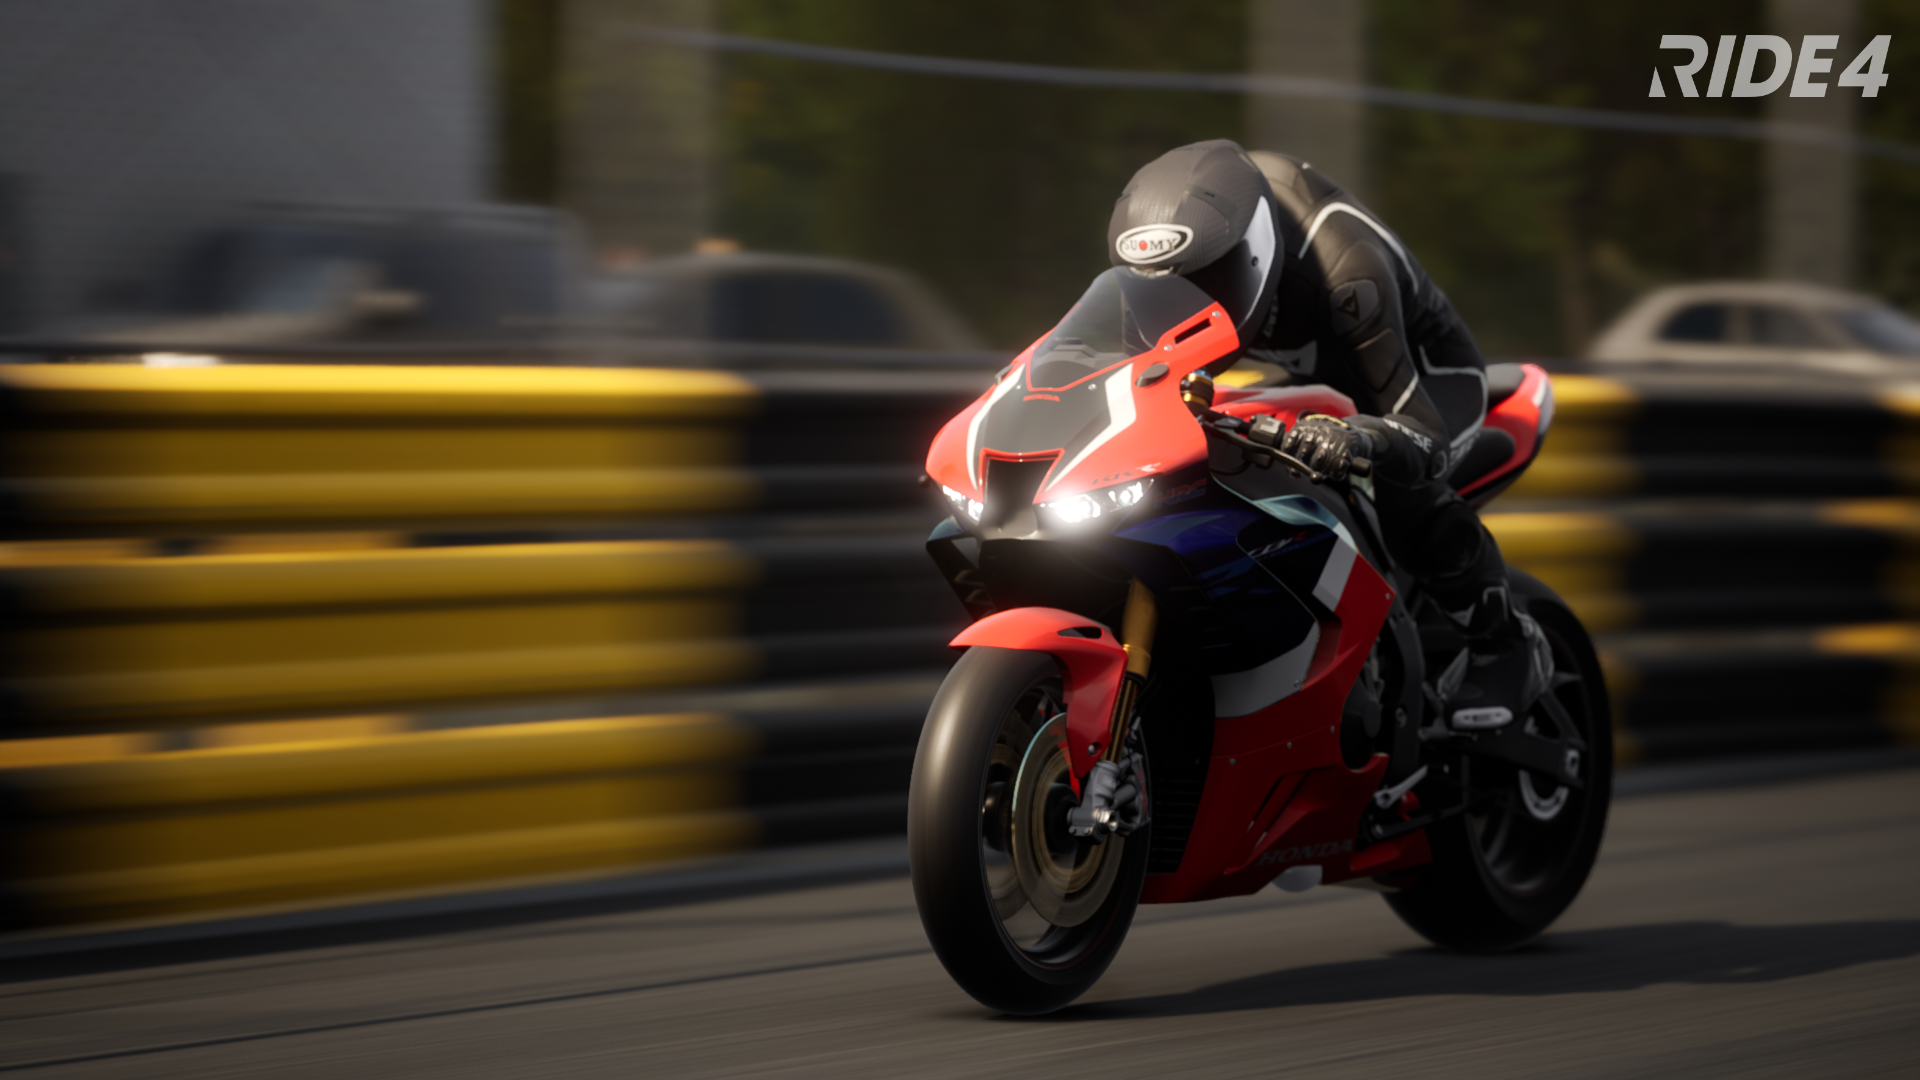 General 1920x1080 motorcycle Racing Motorcycle vehicle blurred blurry background headlights helmet video games